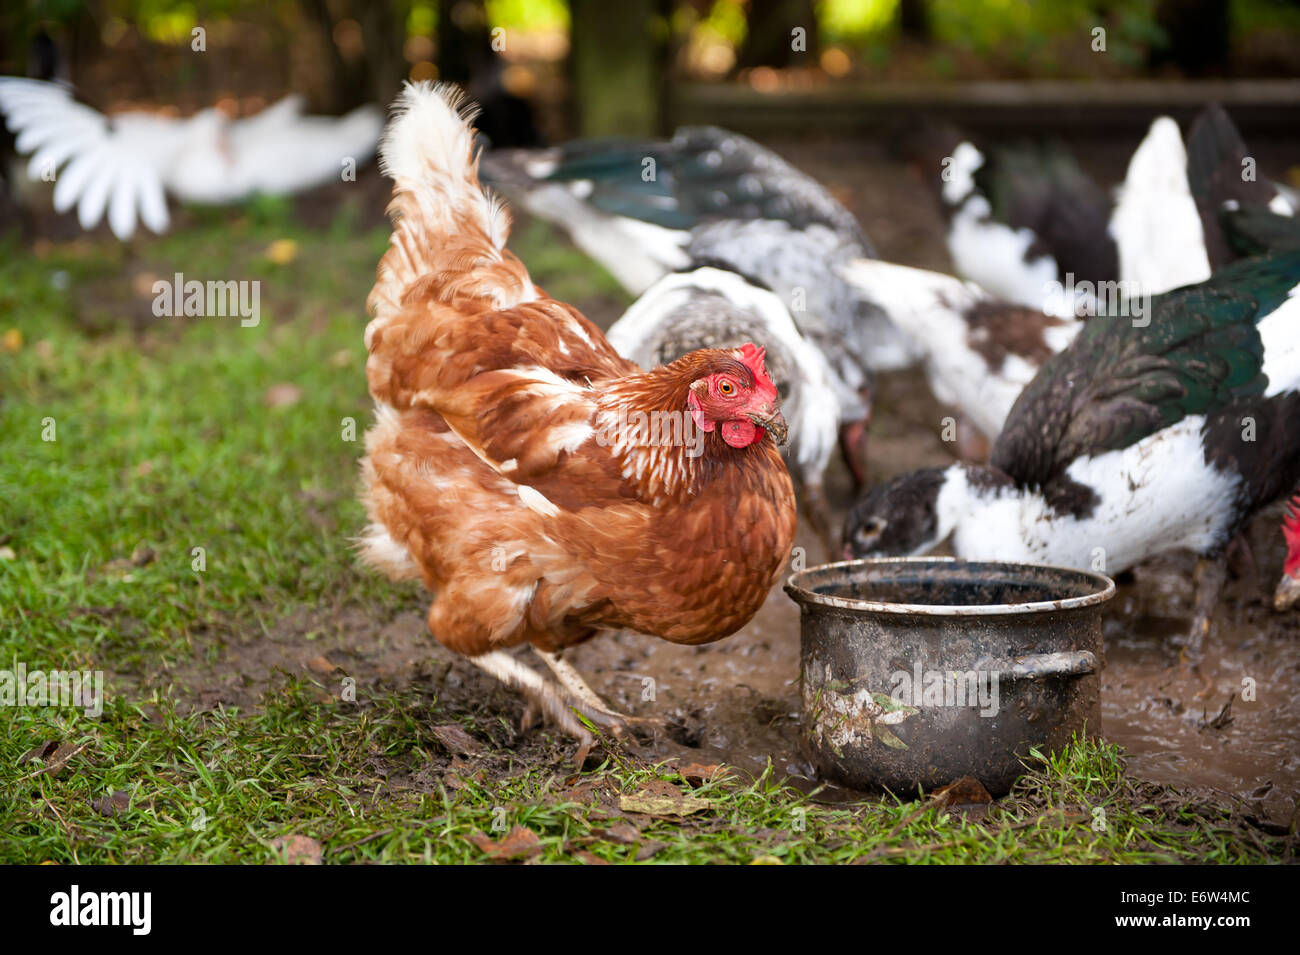 Freilandhaltung Henne Graben im Boden Stockfoto